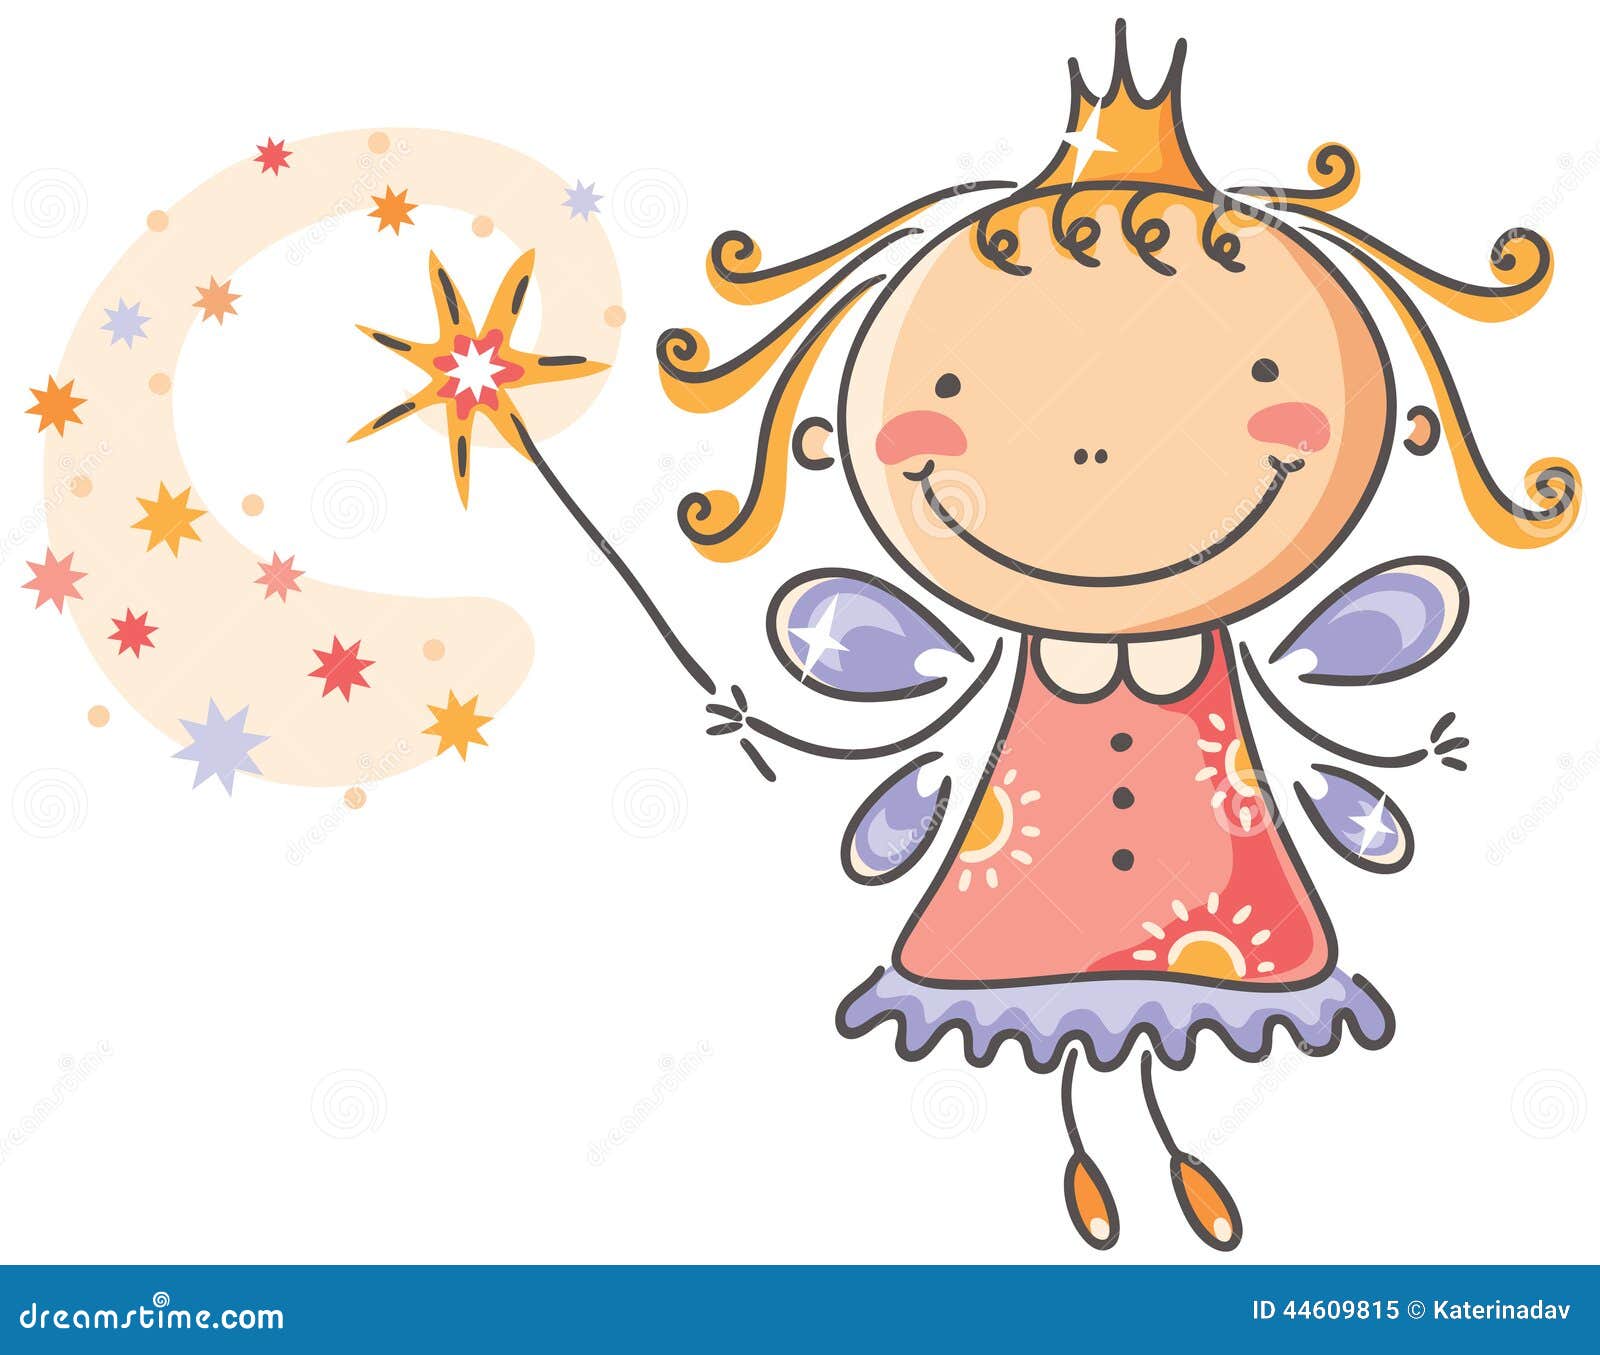 Little Cartoon Fairy Stock Vector - Image: 44609815